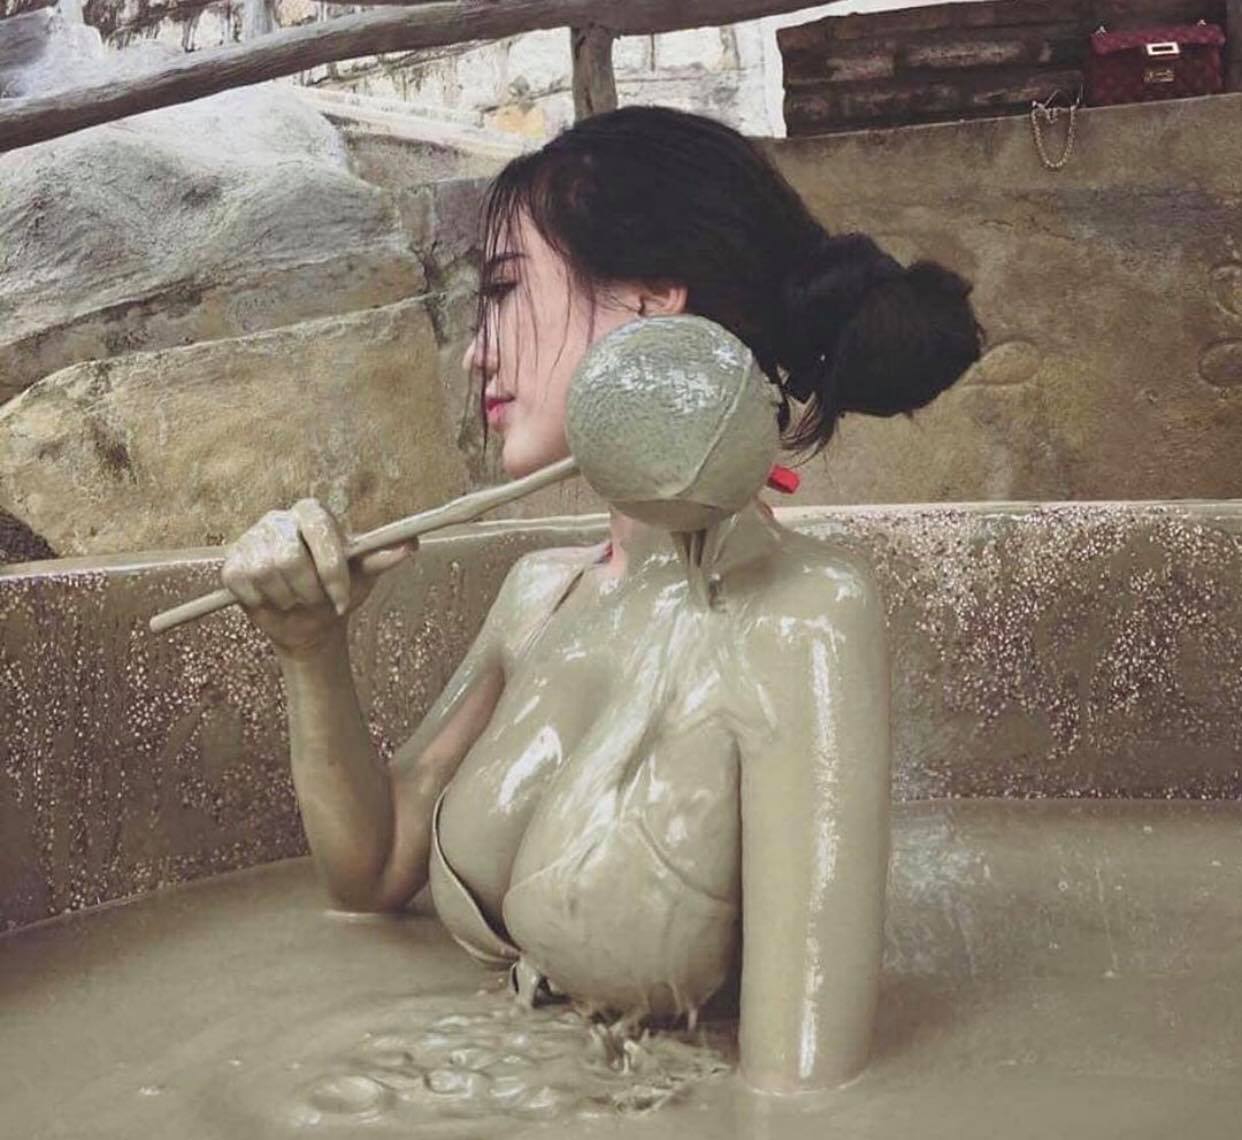 Thiếu nữ Việt tắm bùn, gây mê vì góc chụp cận với body quyến rũ.